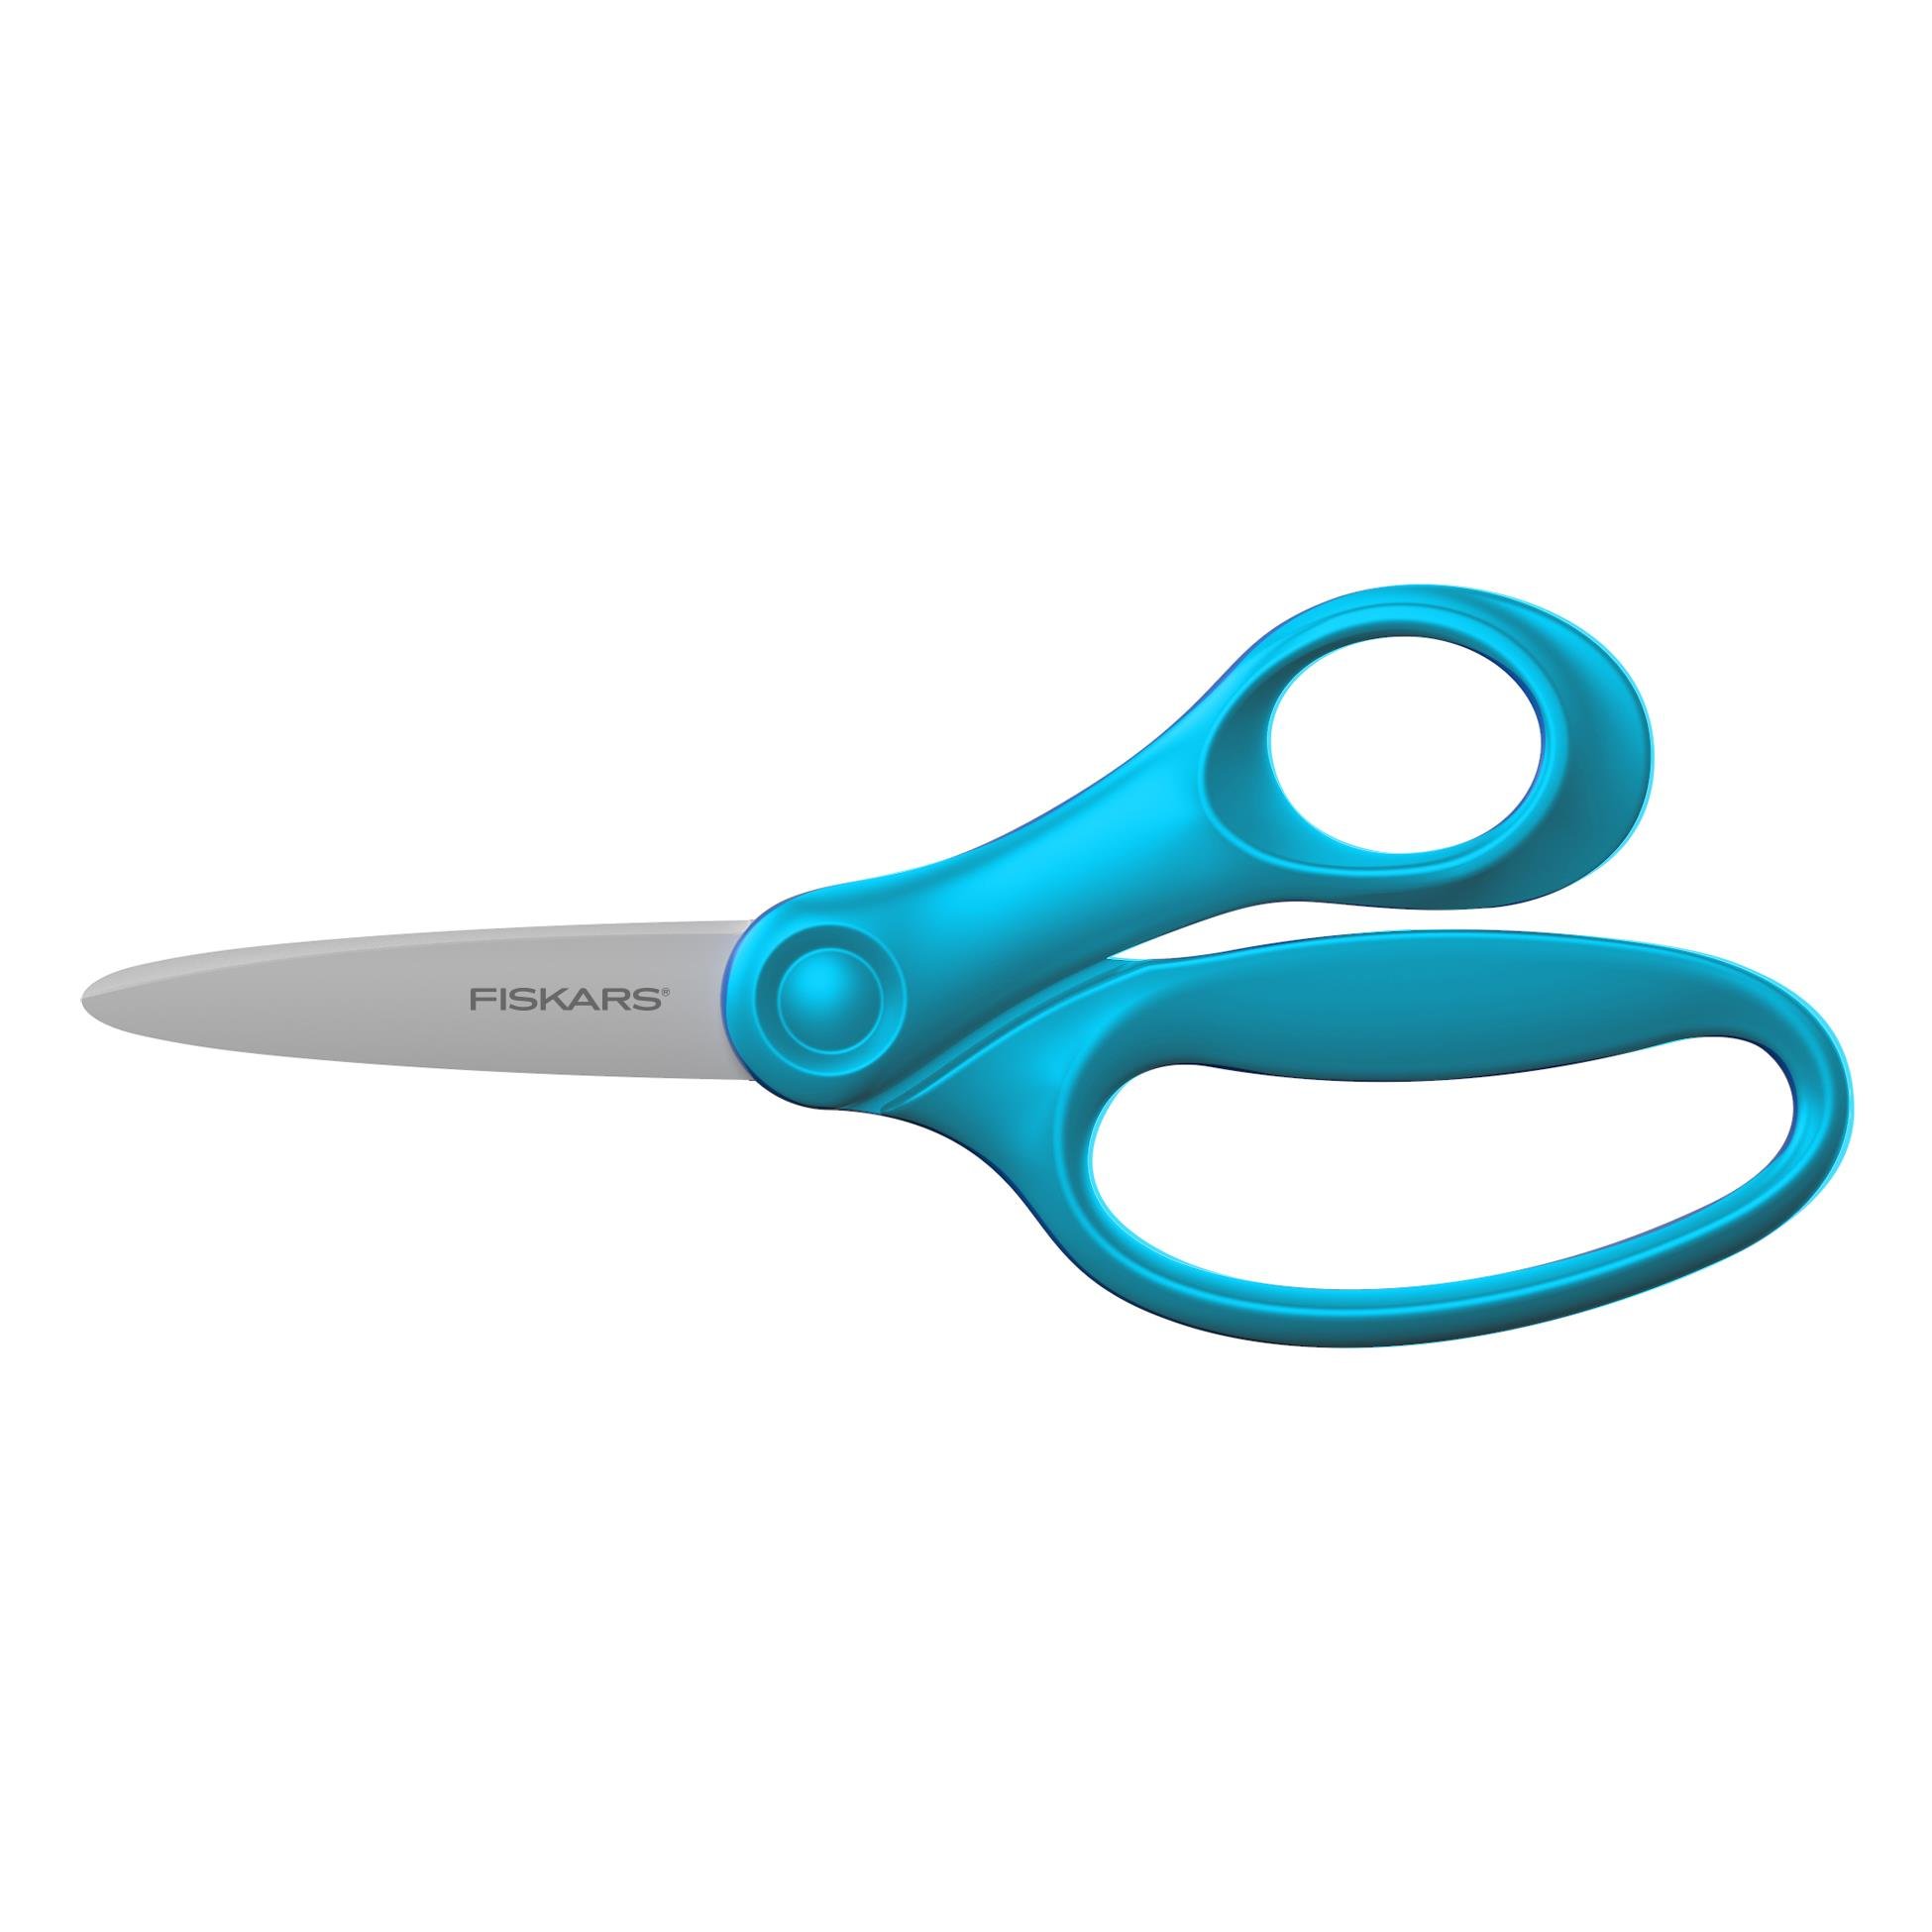 Metal Pre-School Children's Scissors - Right Handed – Elenfhant